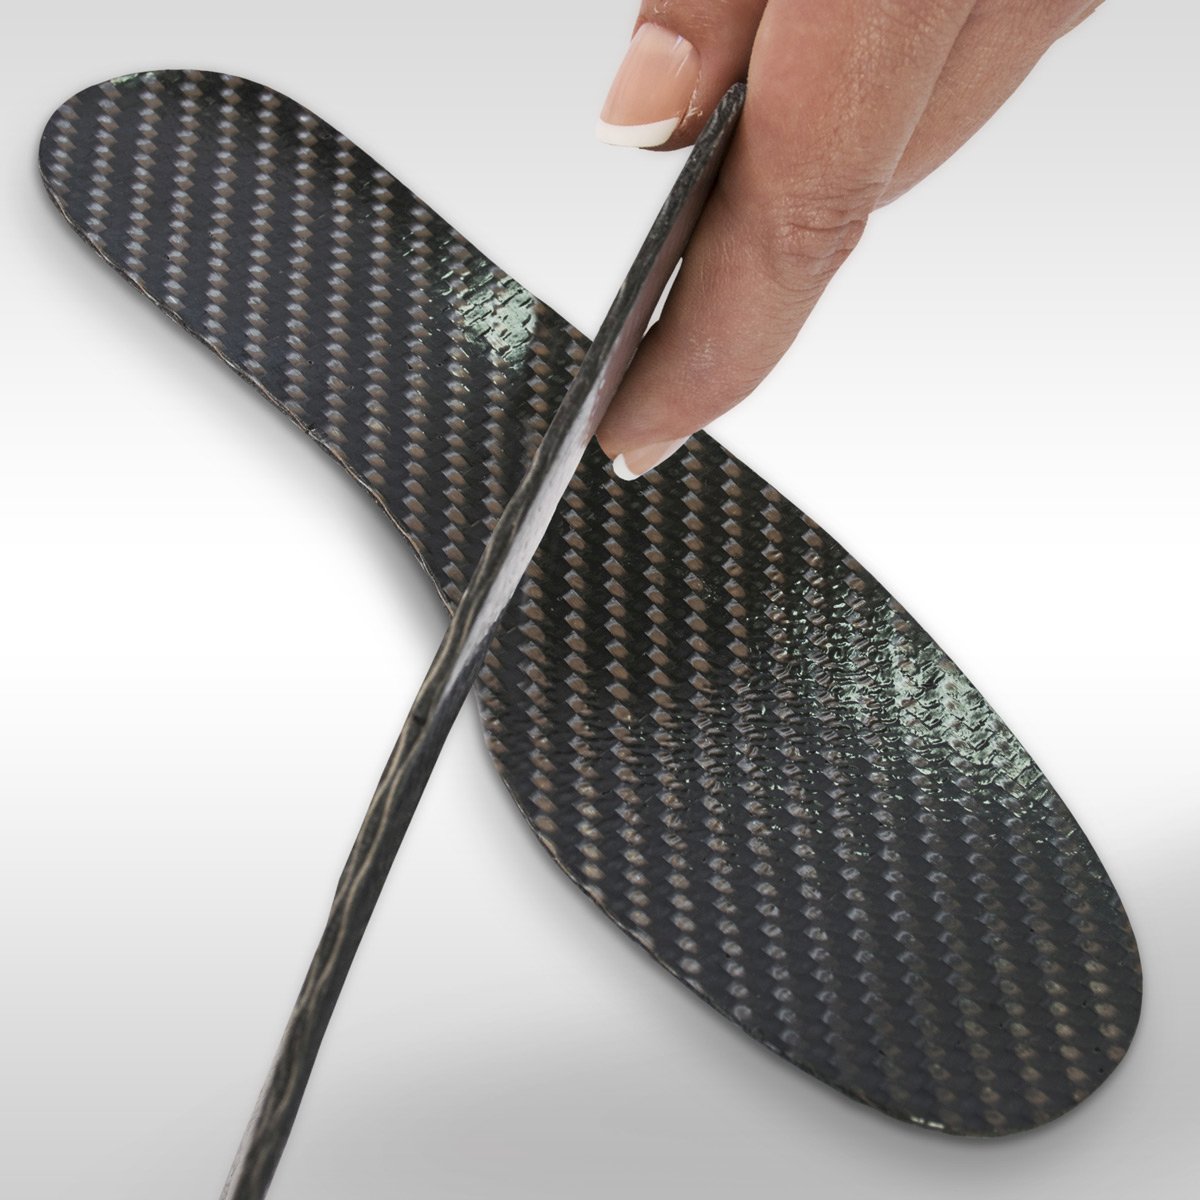 carbon fiber shoe insoles